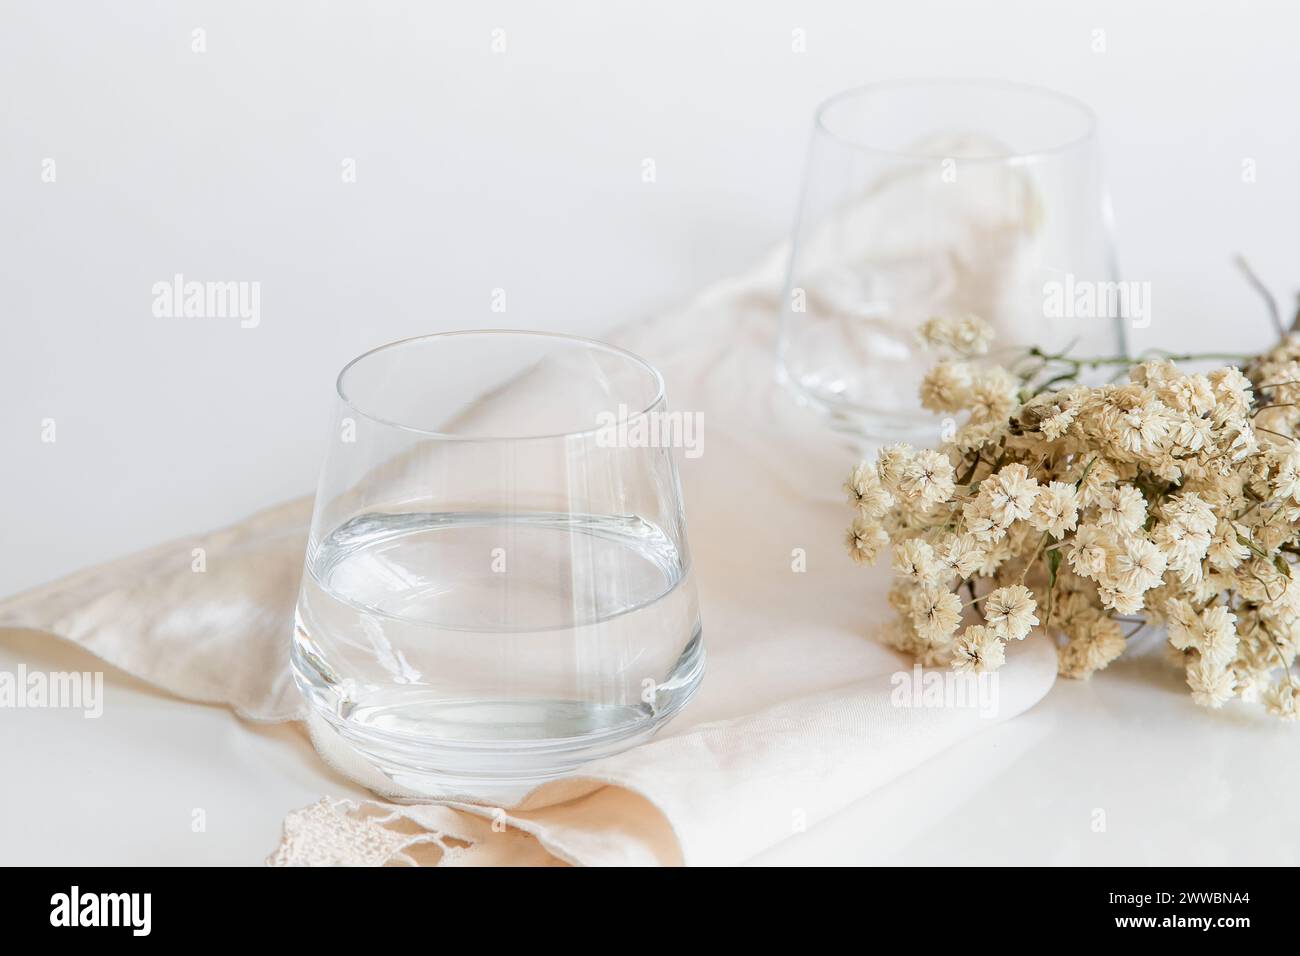 Tasse en verre contenant de l'eau naturelle sur fond blanc. Image simple et propre. Concept de simplicité de l'eau potable. Banque D'Images